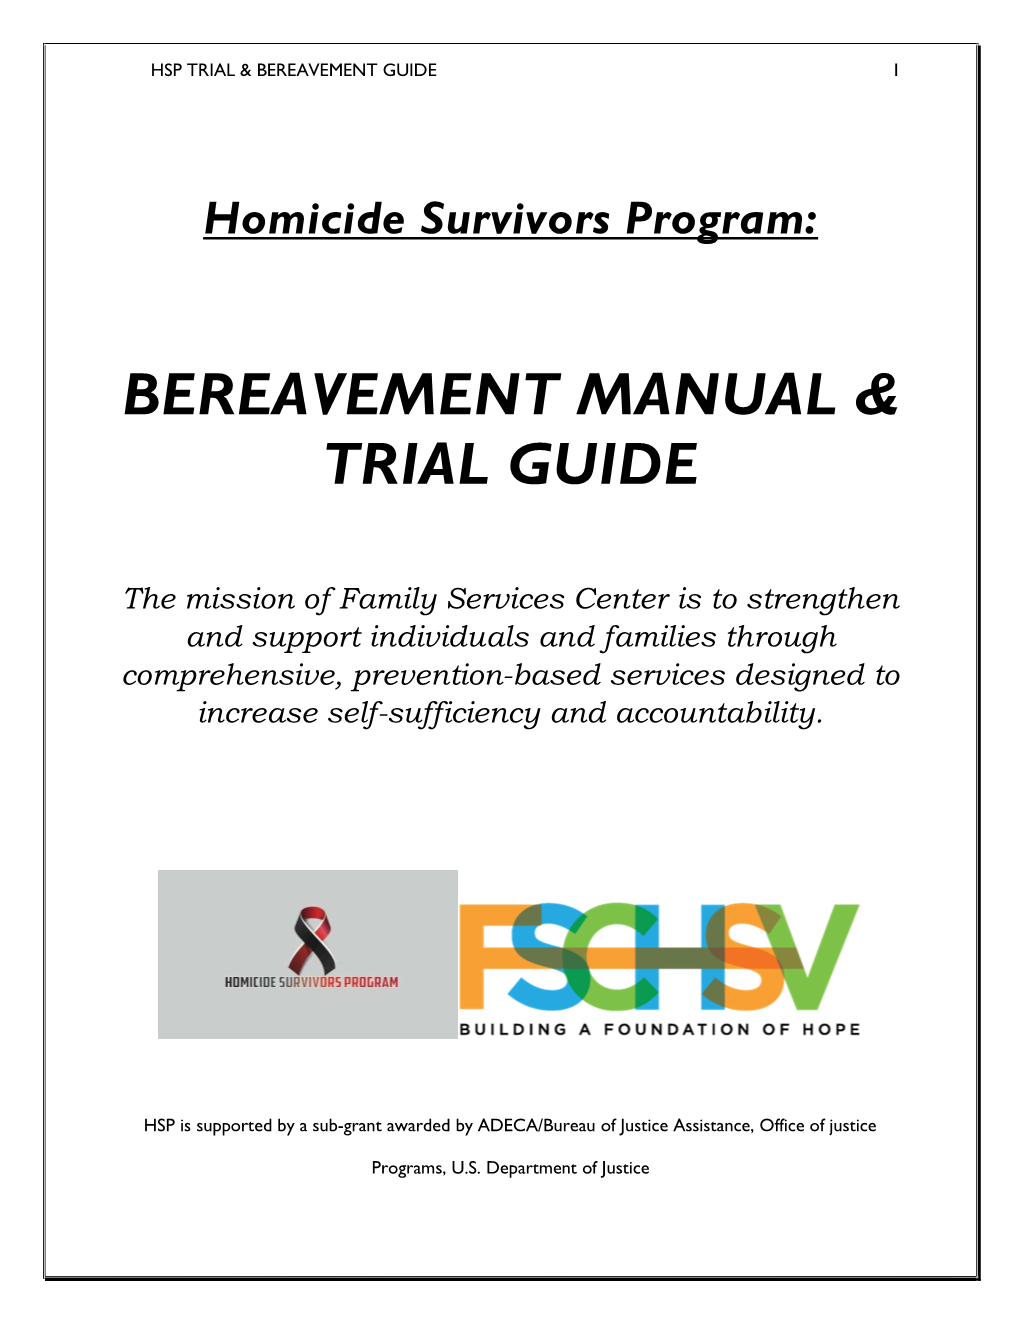 Bereavement Manual & Trial Guide